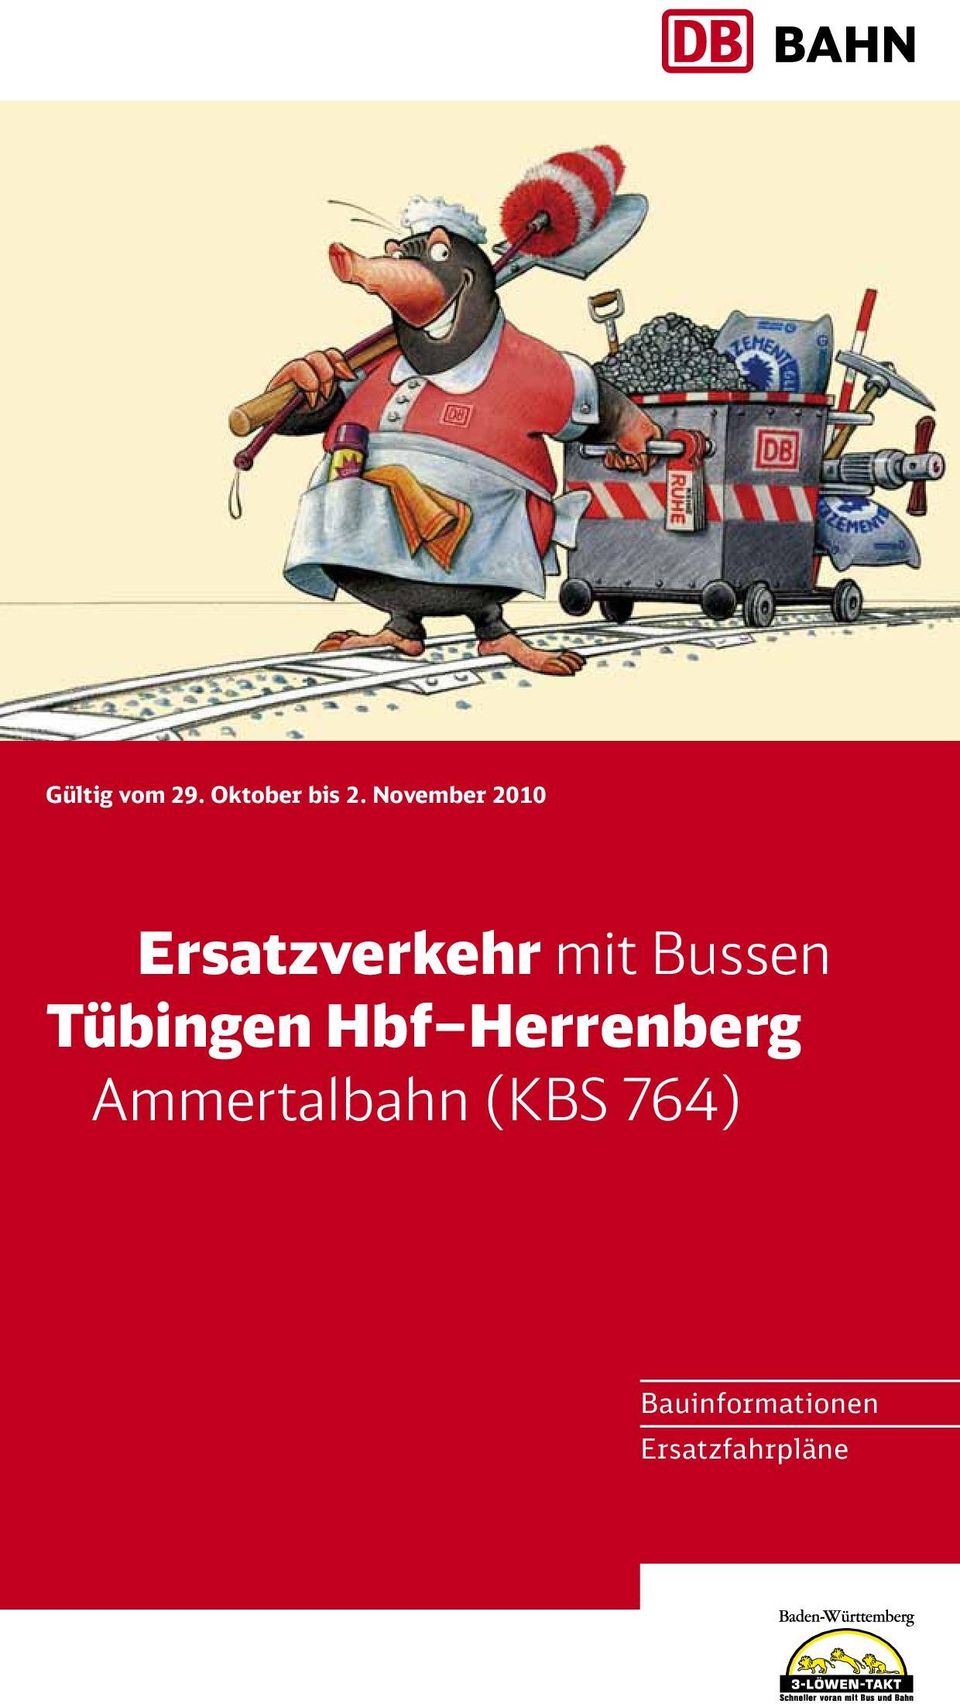 Bussen Hbf Herrenberg Ammertalbahn